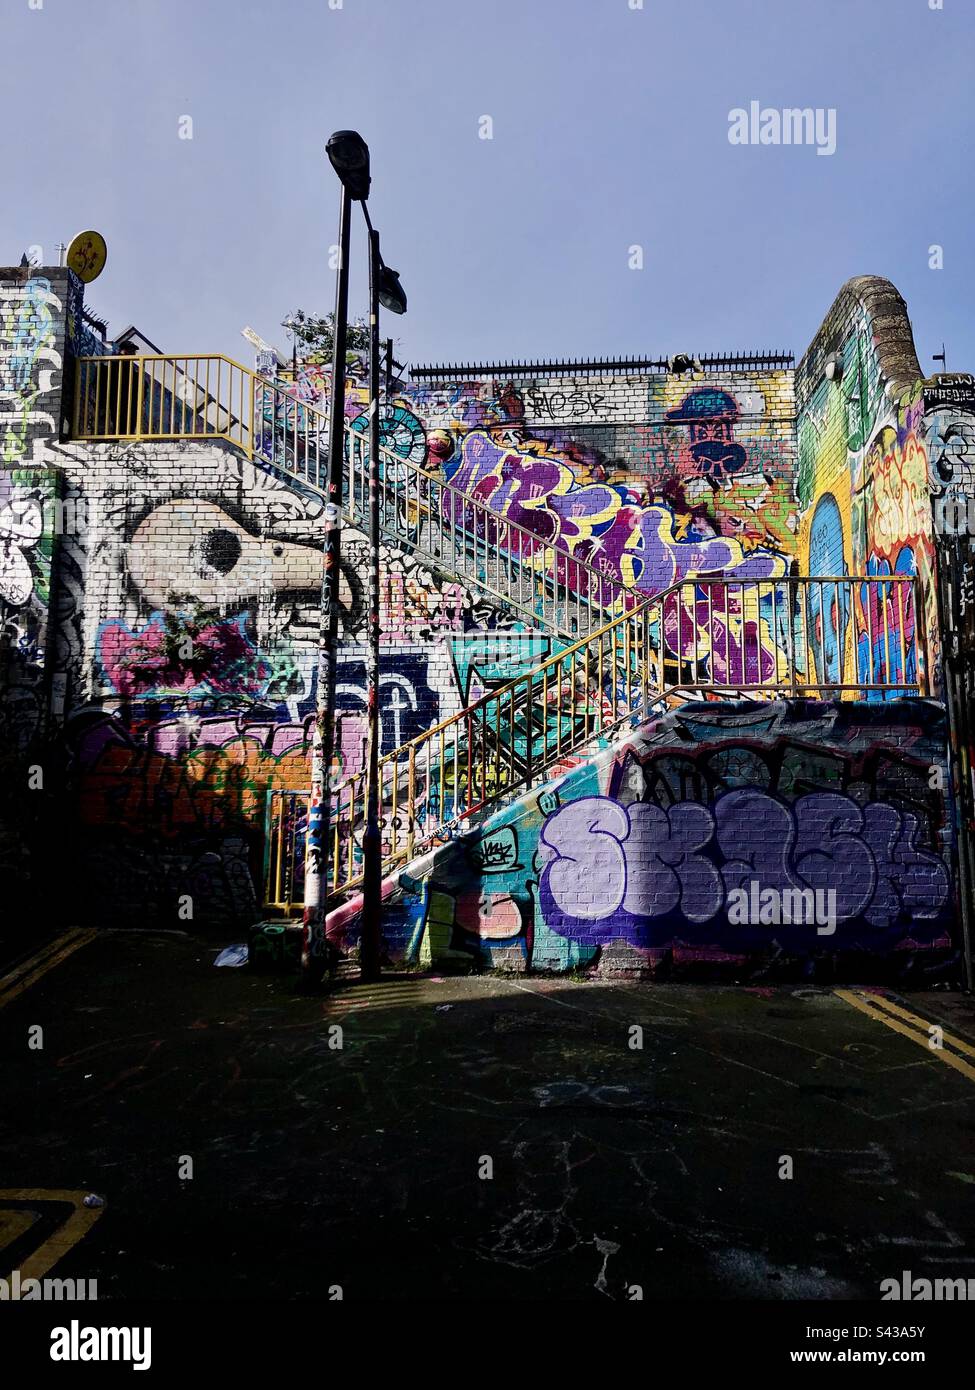 Street art graffiti et peintures murales à Shoreditch de l'est de Londres Angleterre Royaume-Uni Banque D'Images